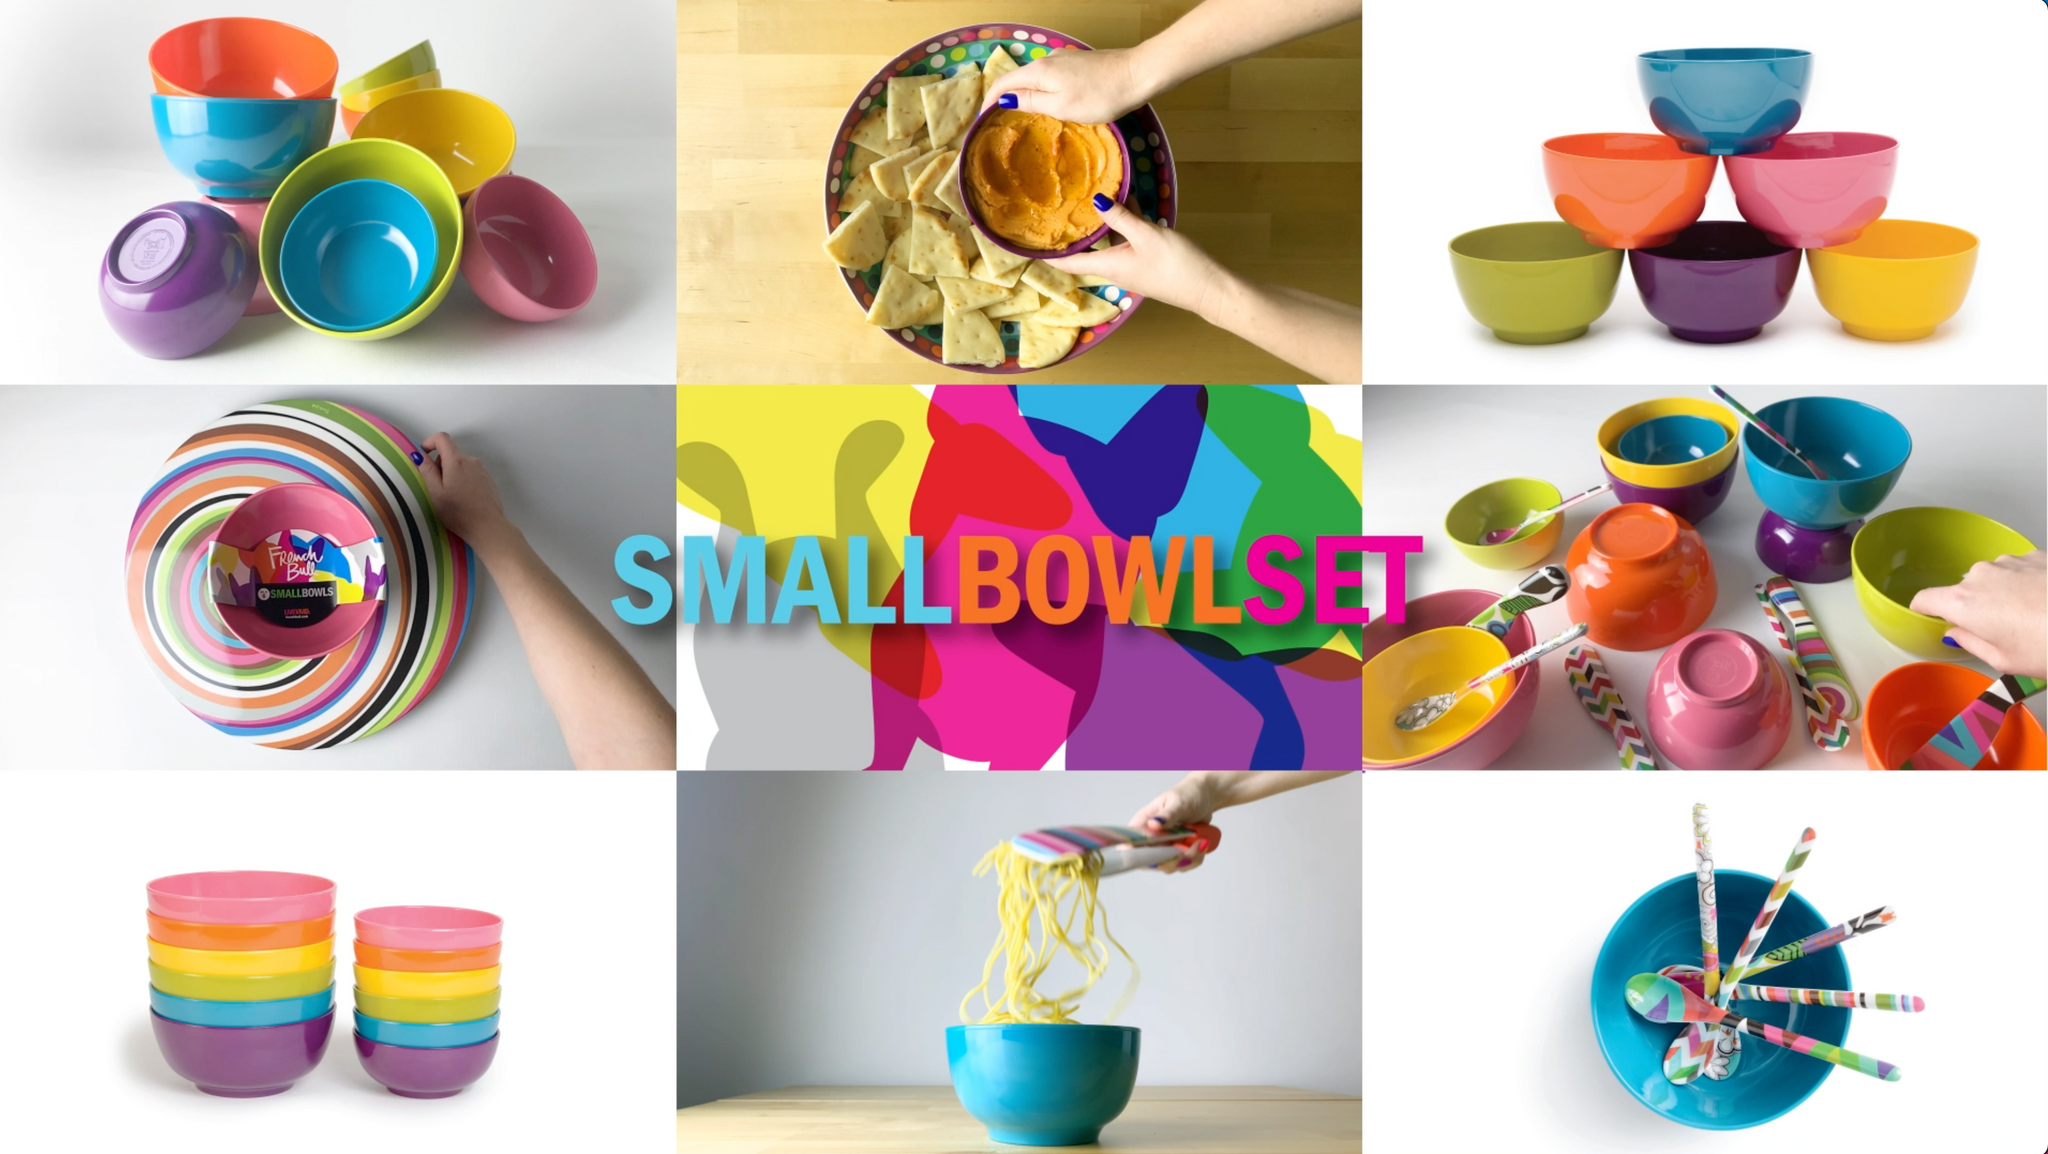 Little Flower Snack Bowls - Set of 6